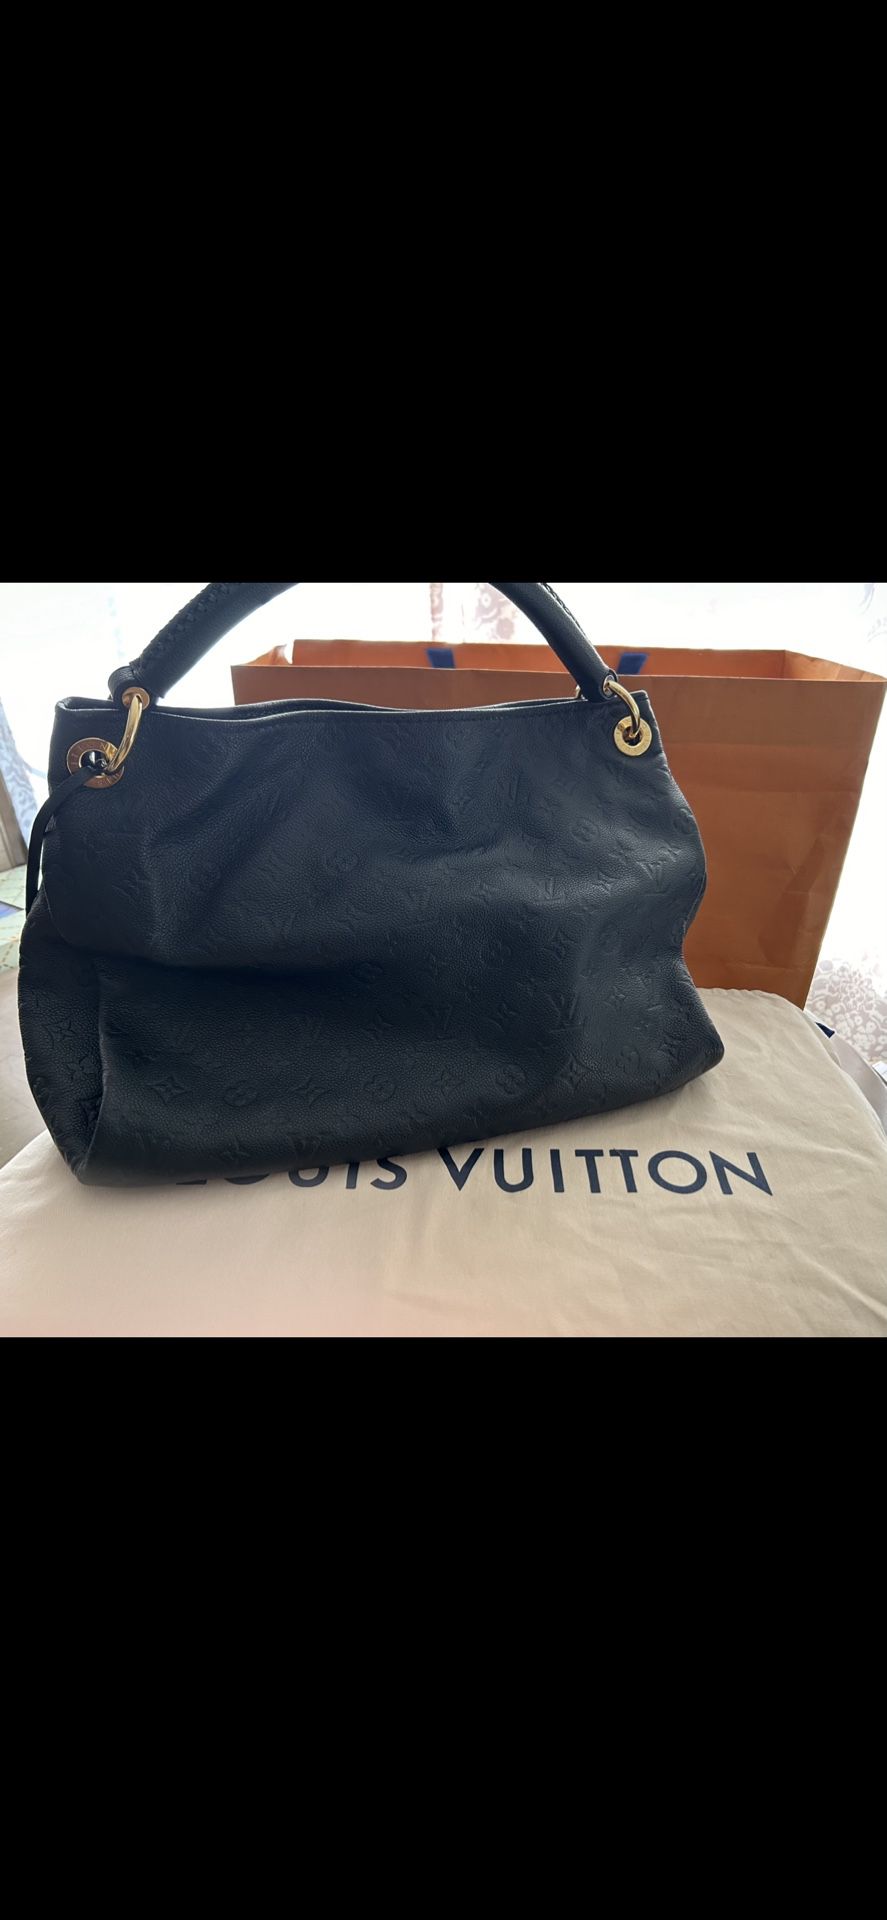 Authentic Louis Vuitton Artsy MM Purse Noir/Black Empreinte Bag With Box & Dust Bag